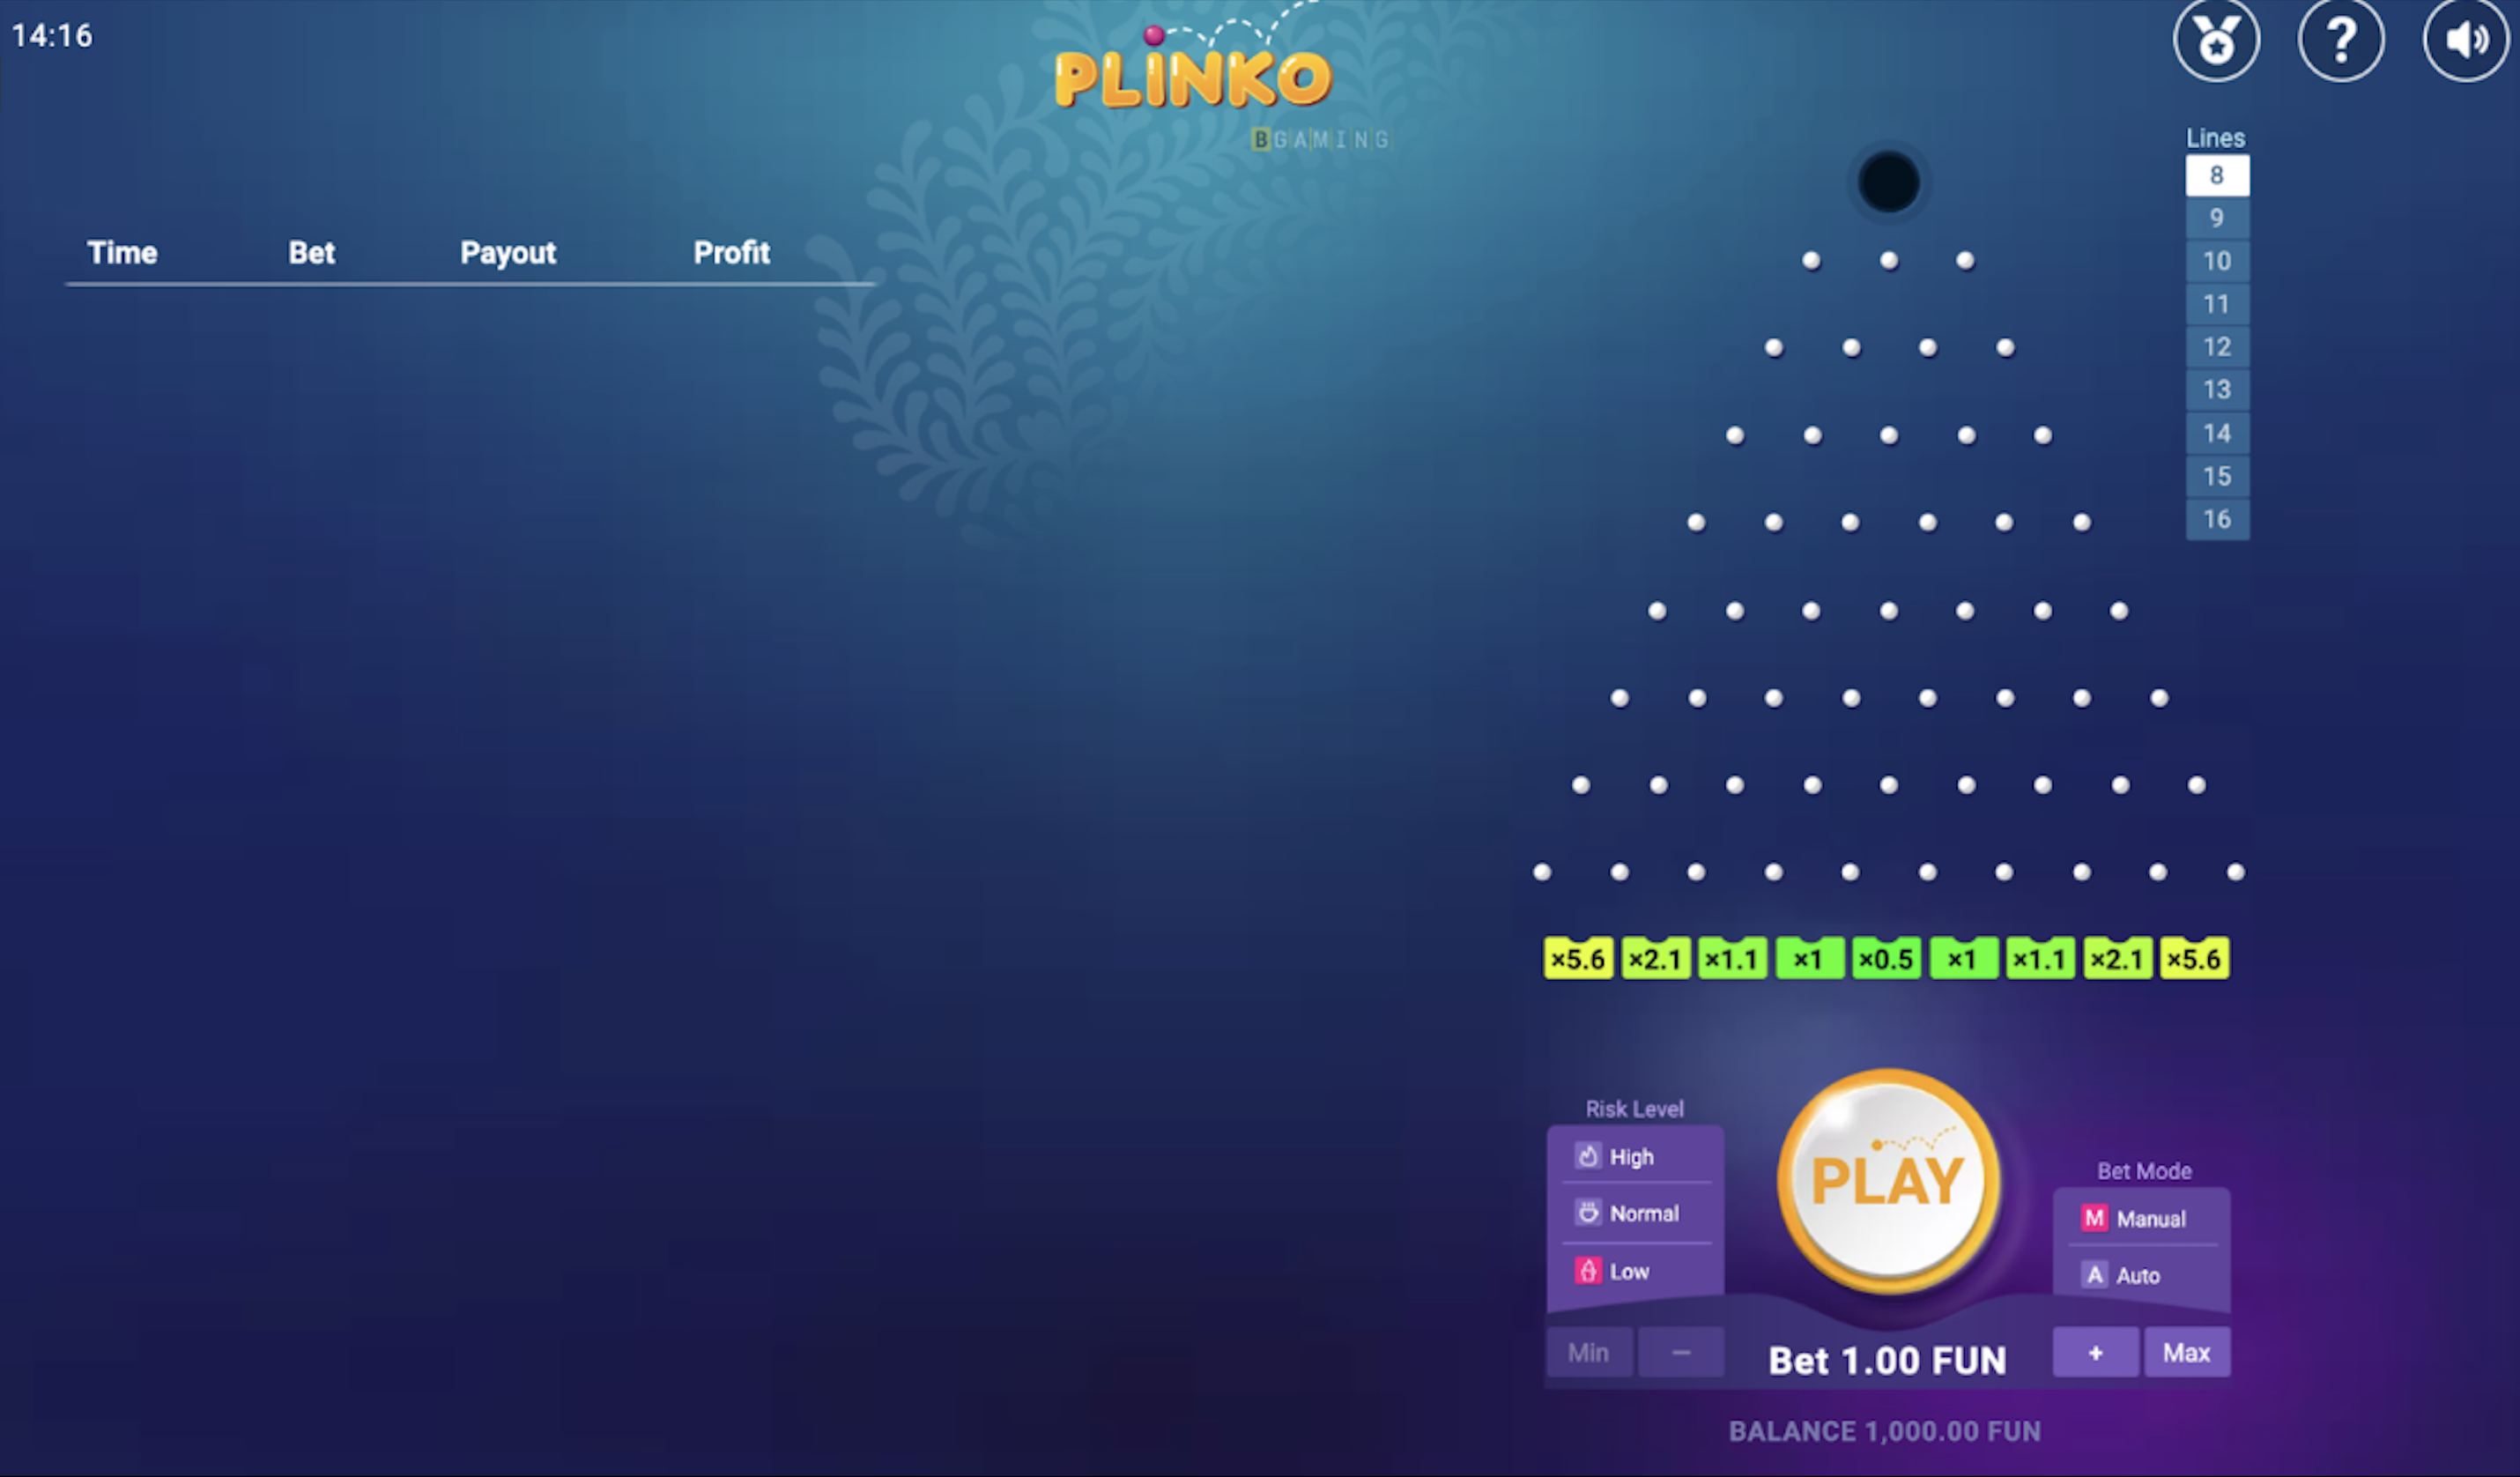 Qu'est-ce que le Plinko ? | Quelle est la stratégie du jeu Plinko? 